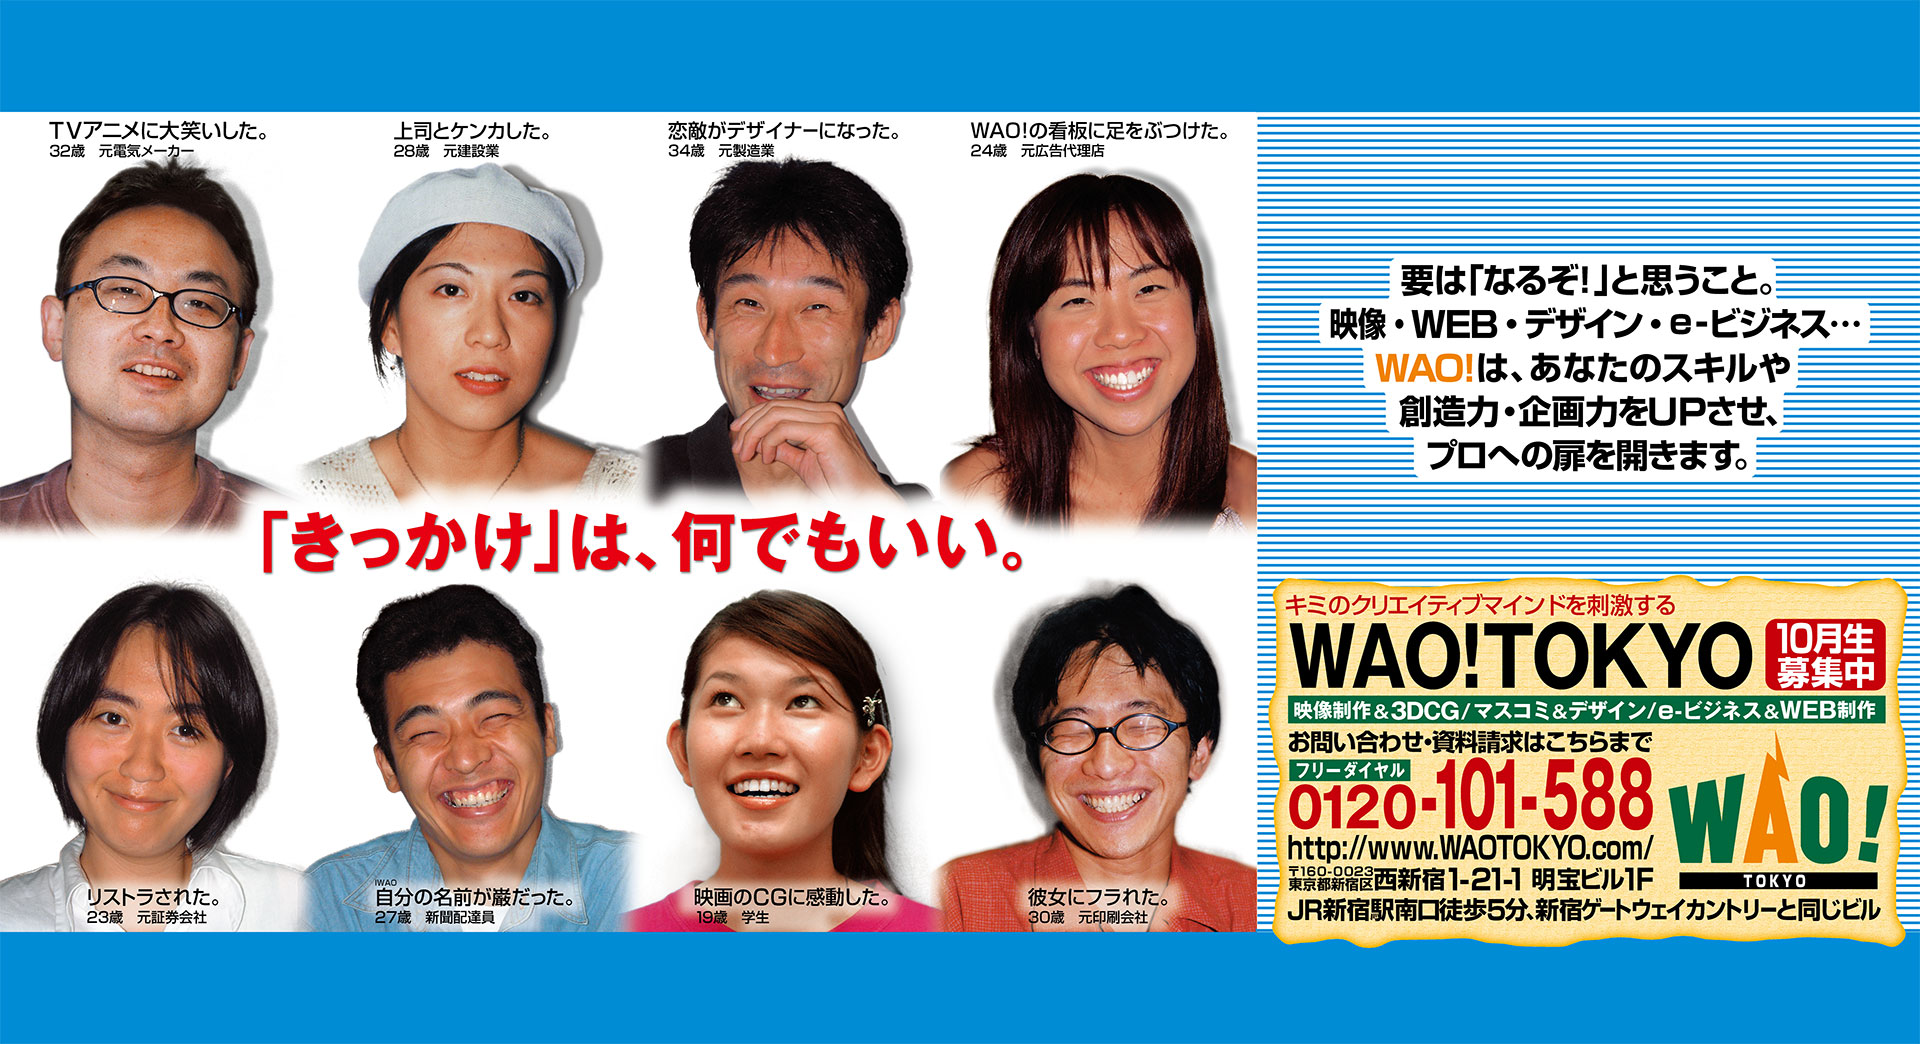 WAO! Corporation｜京王線・小田急線窓上広告